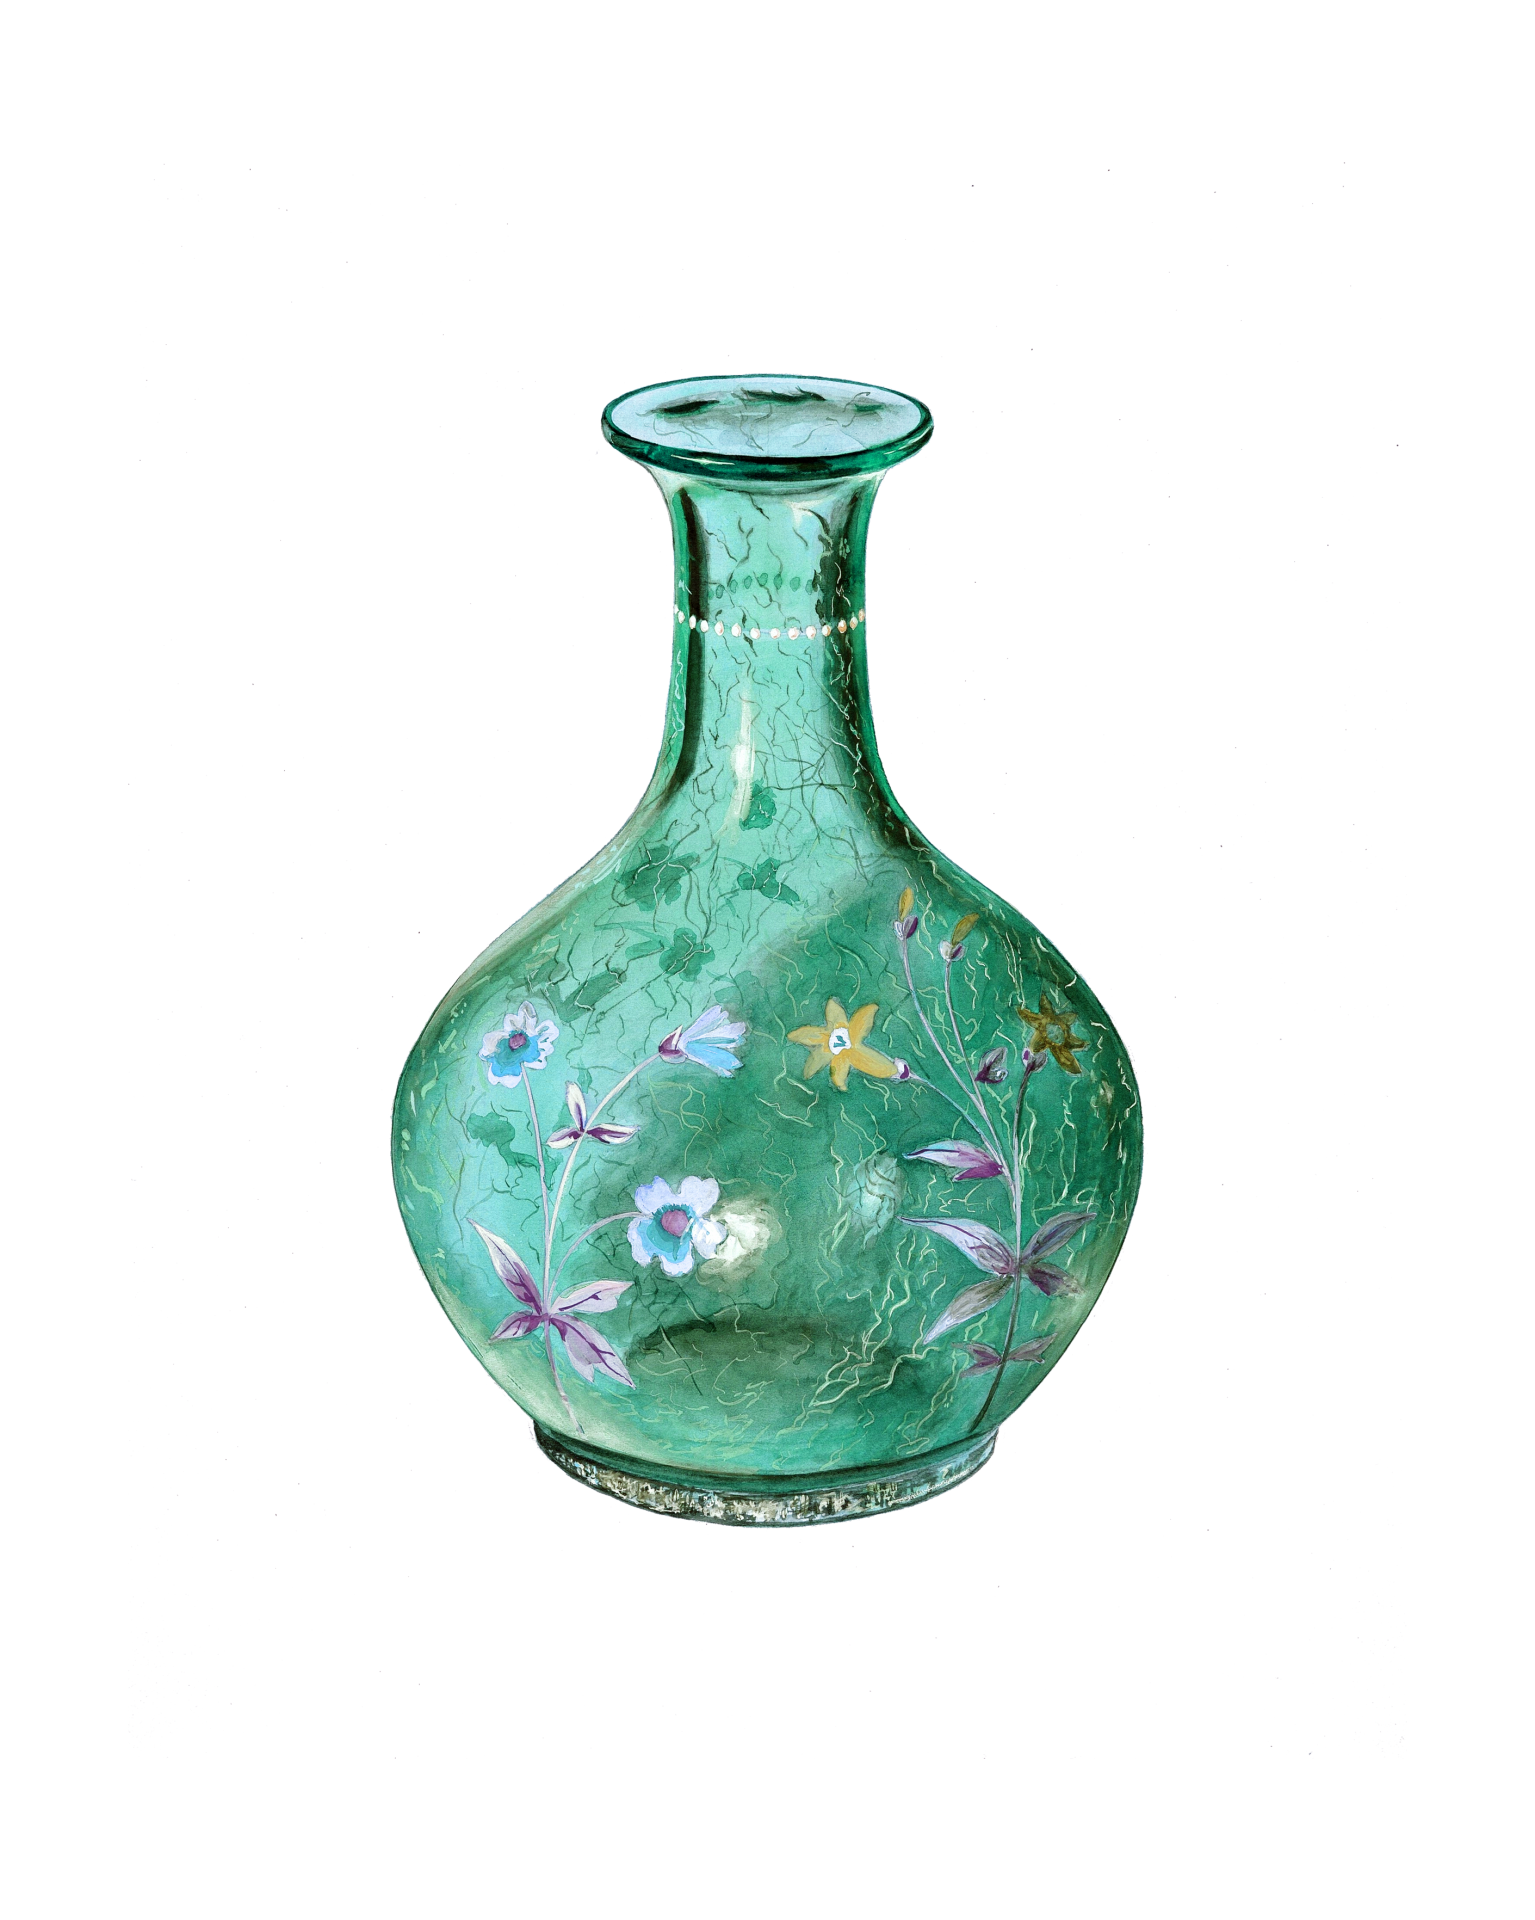 Vase Vintage Art Painting